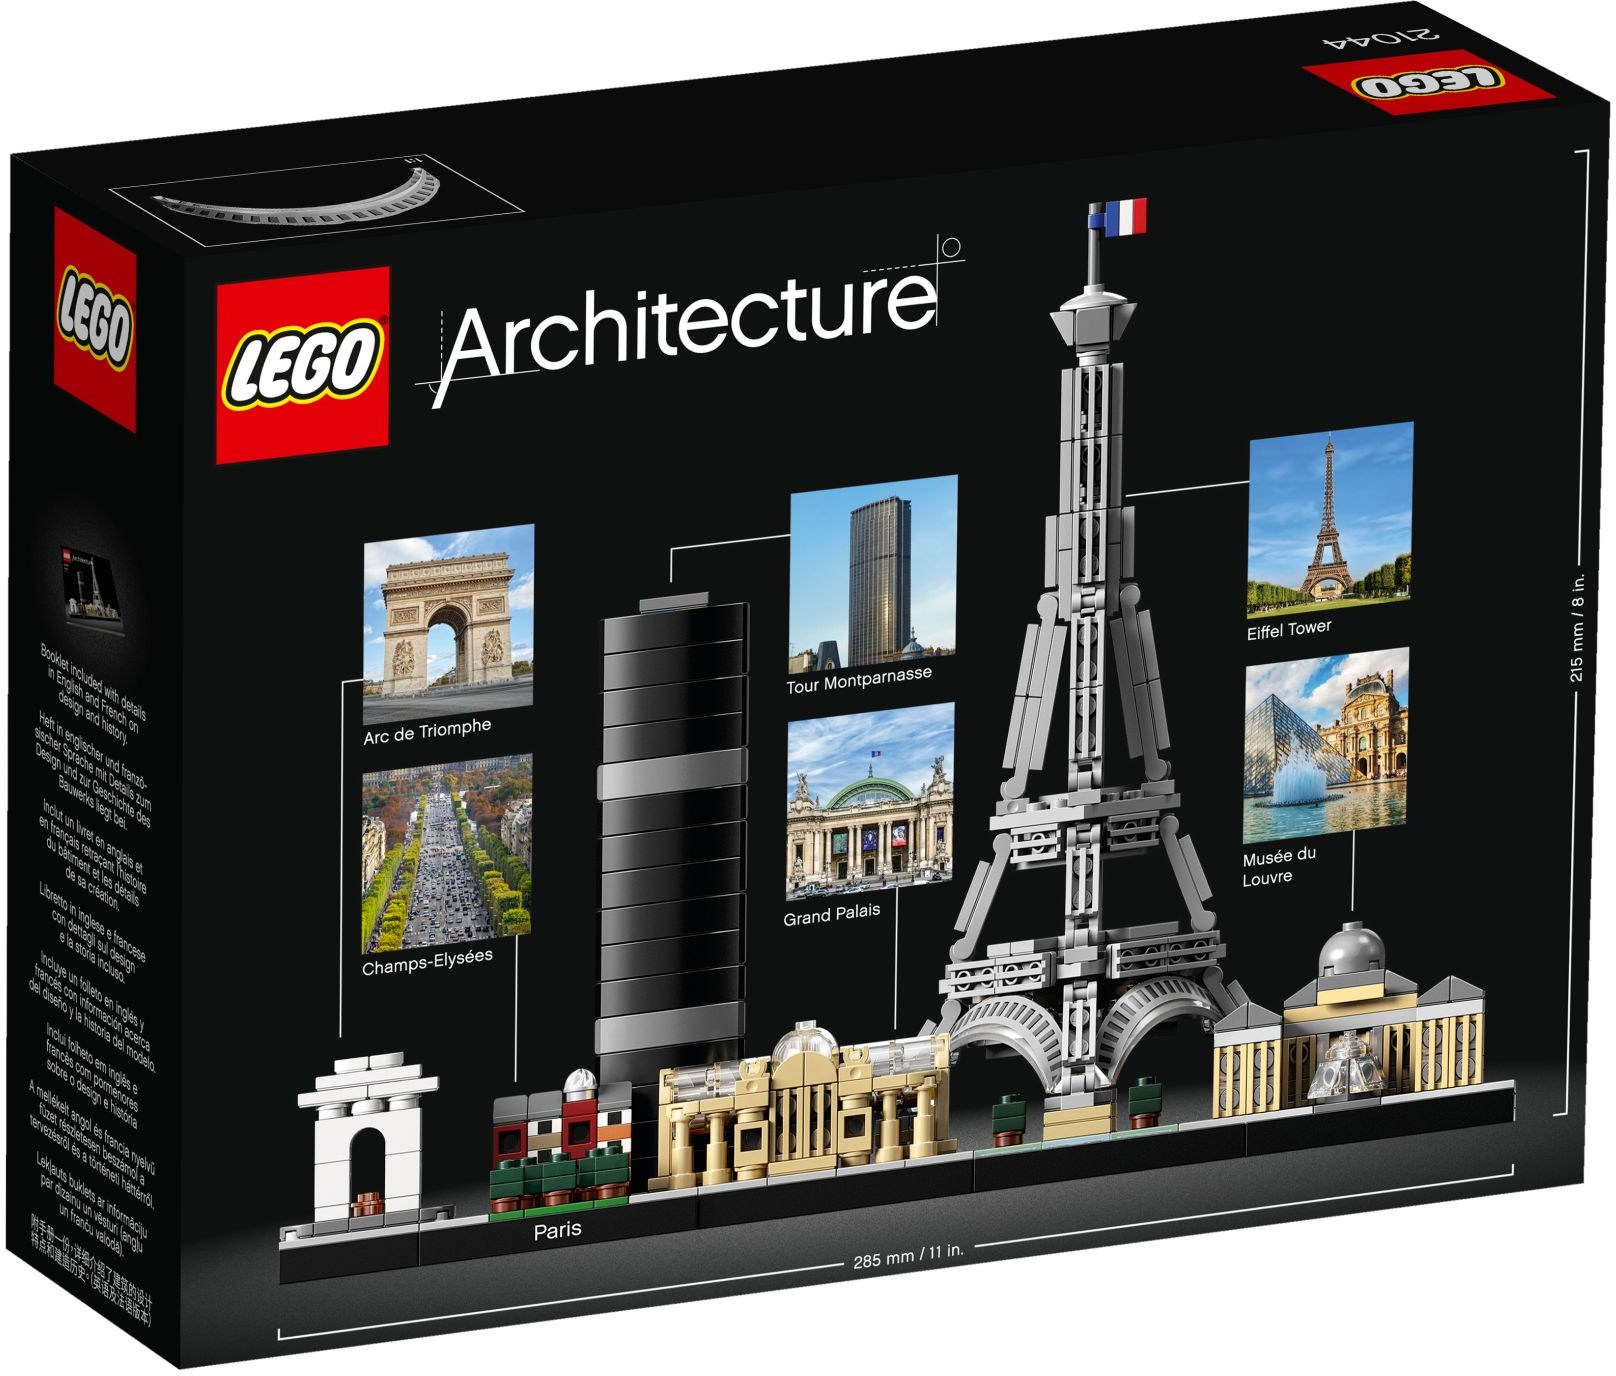 LEGO® Architecture 21044 - Paris - Box Back